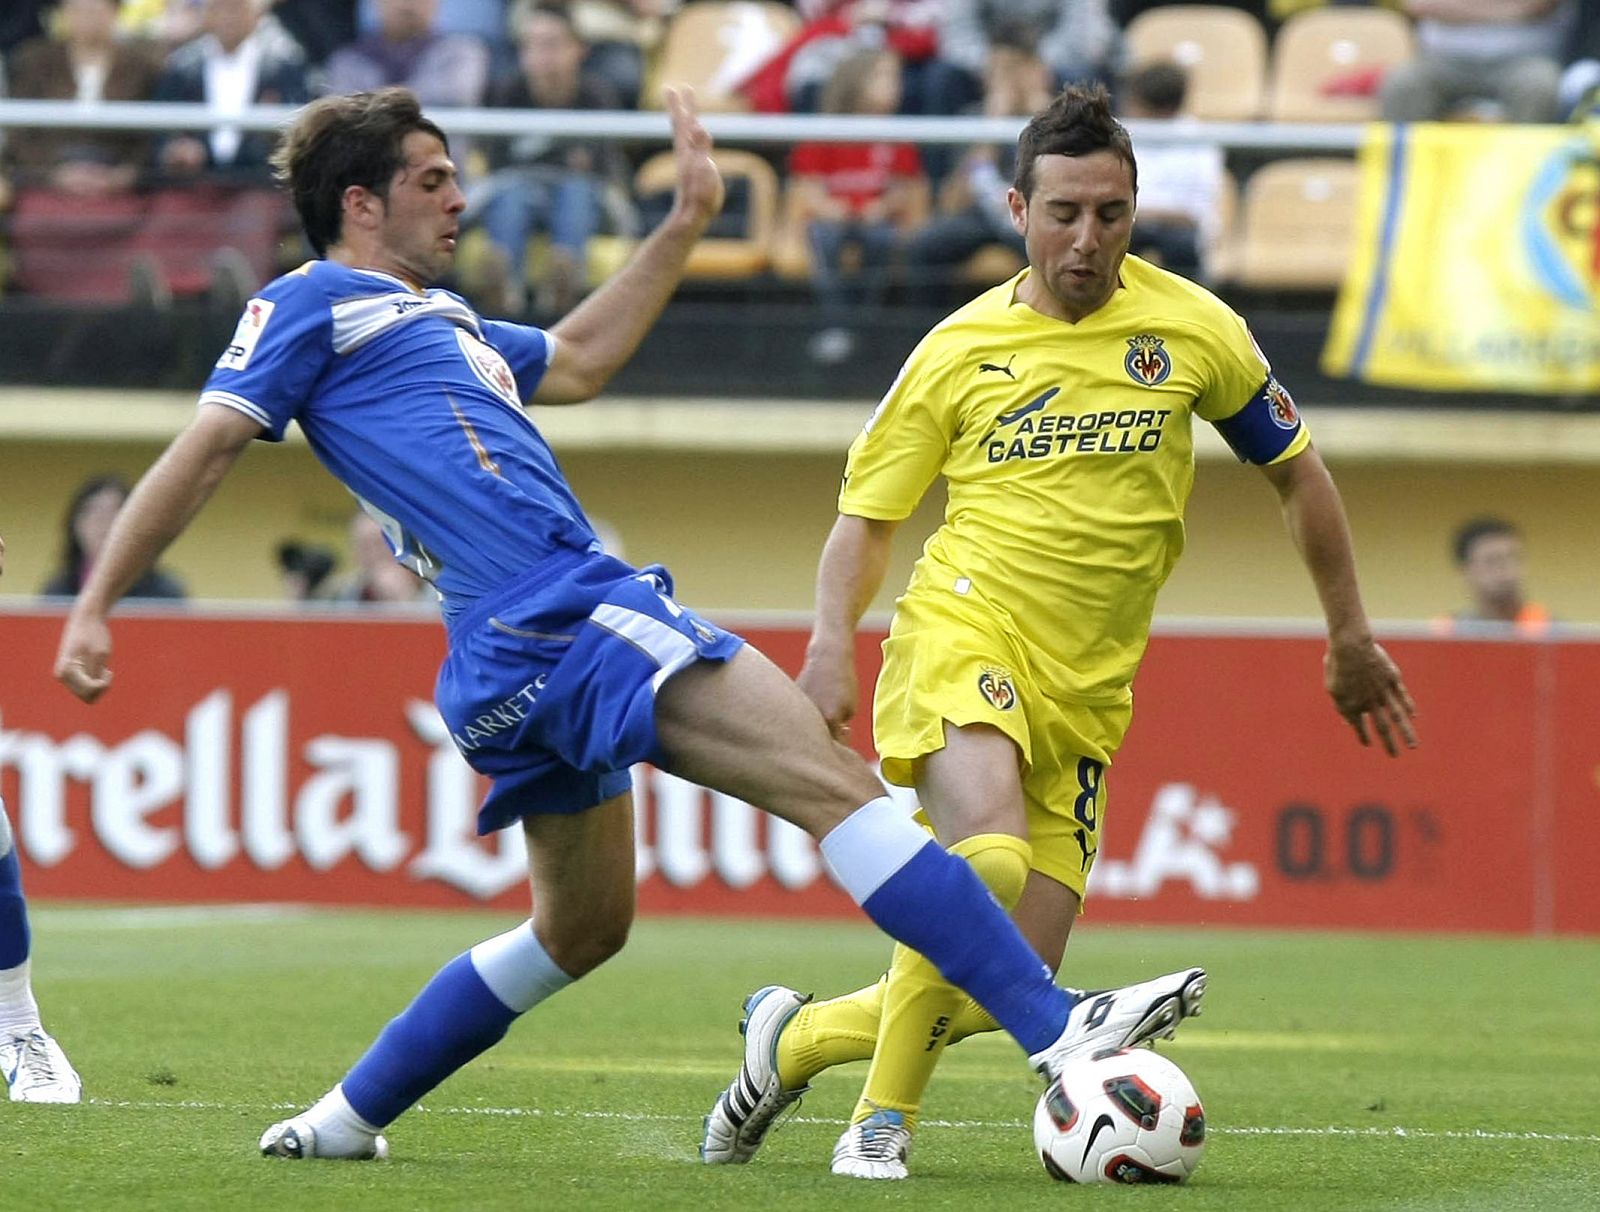 El centrocampista del Villarreal Cazorla trata de escapar de Sardinero, jugador del Getafe.